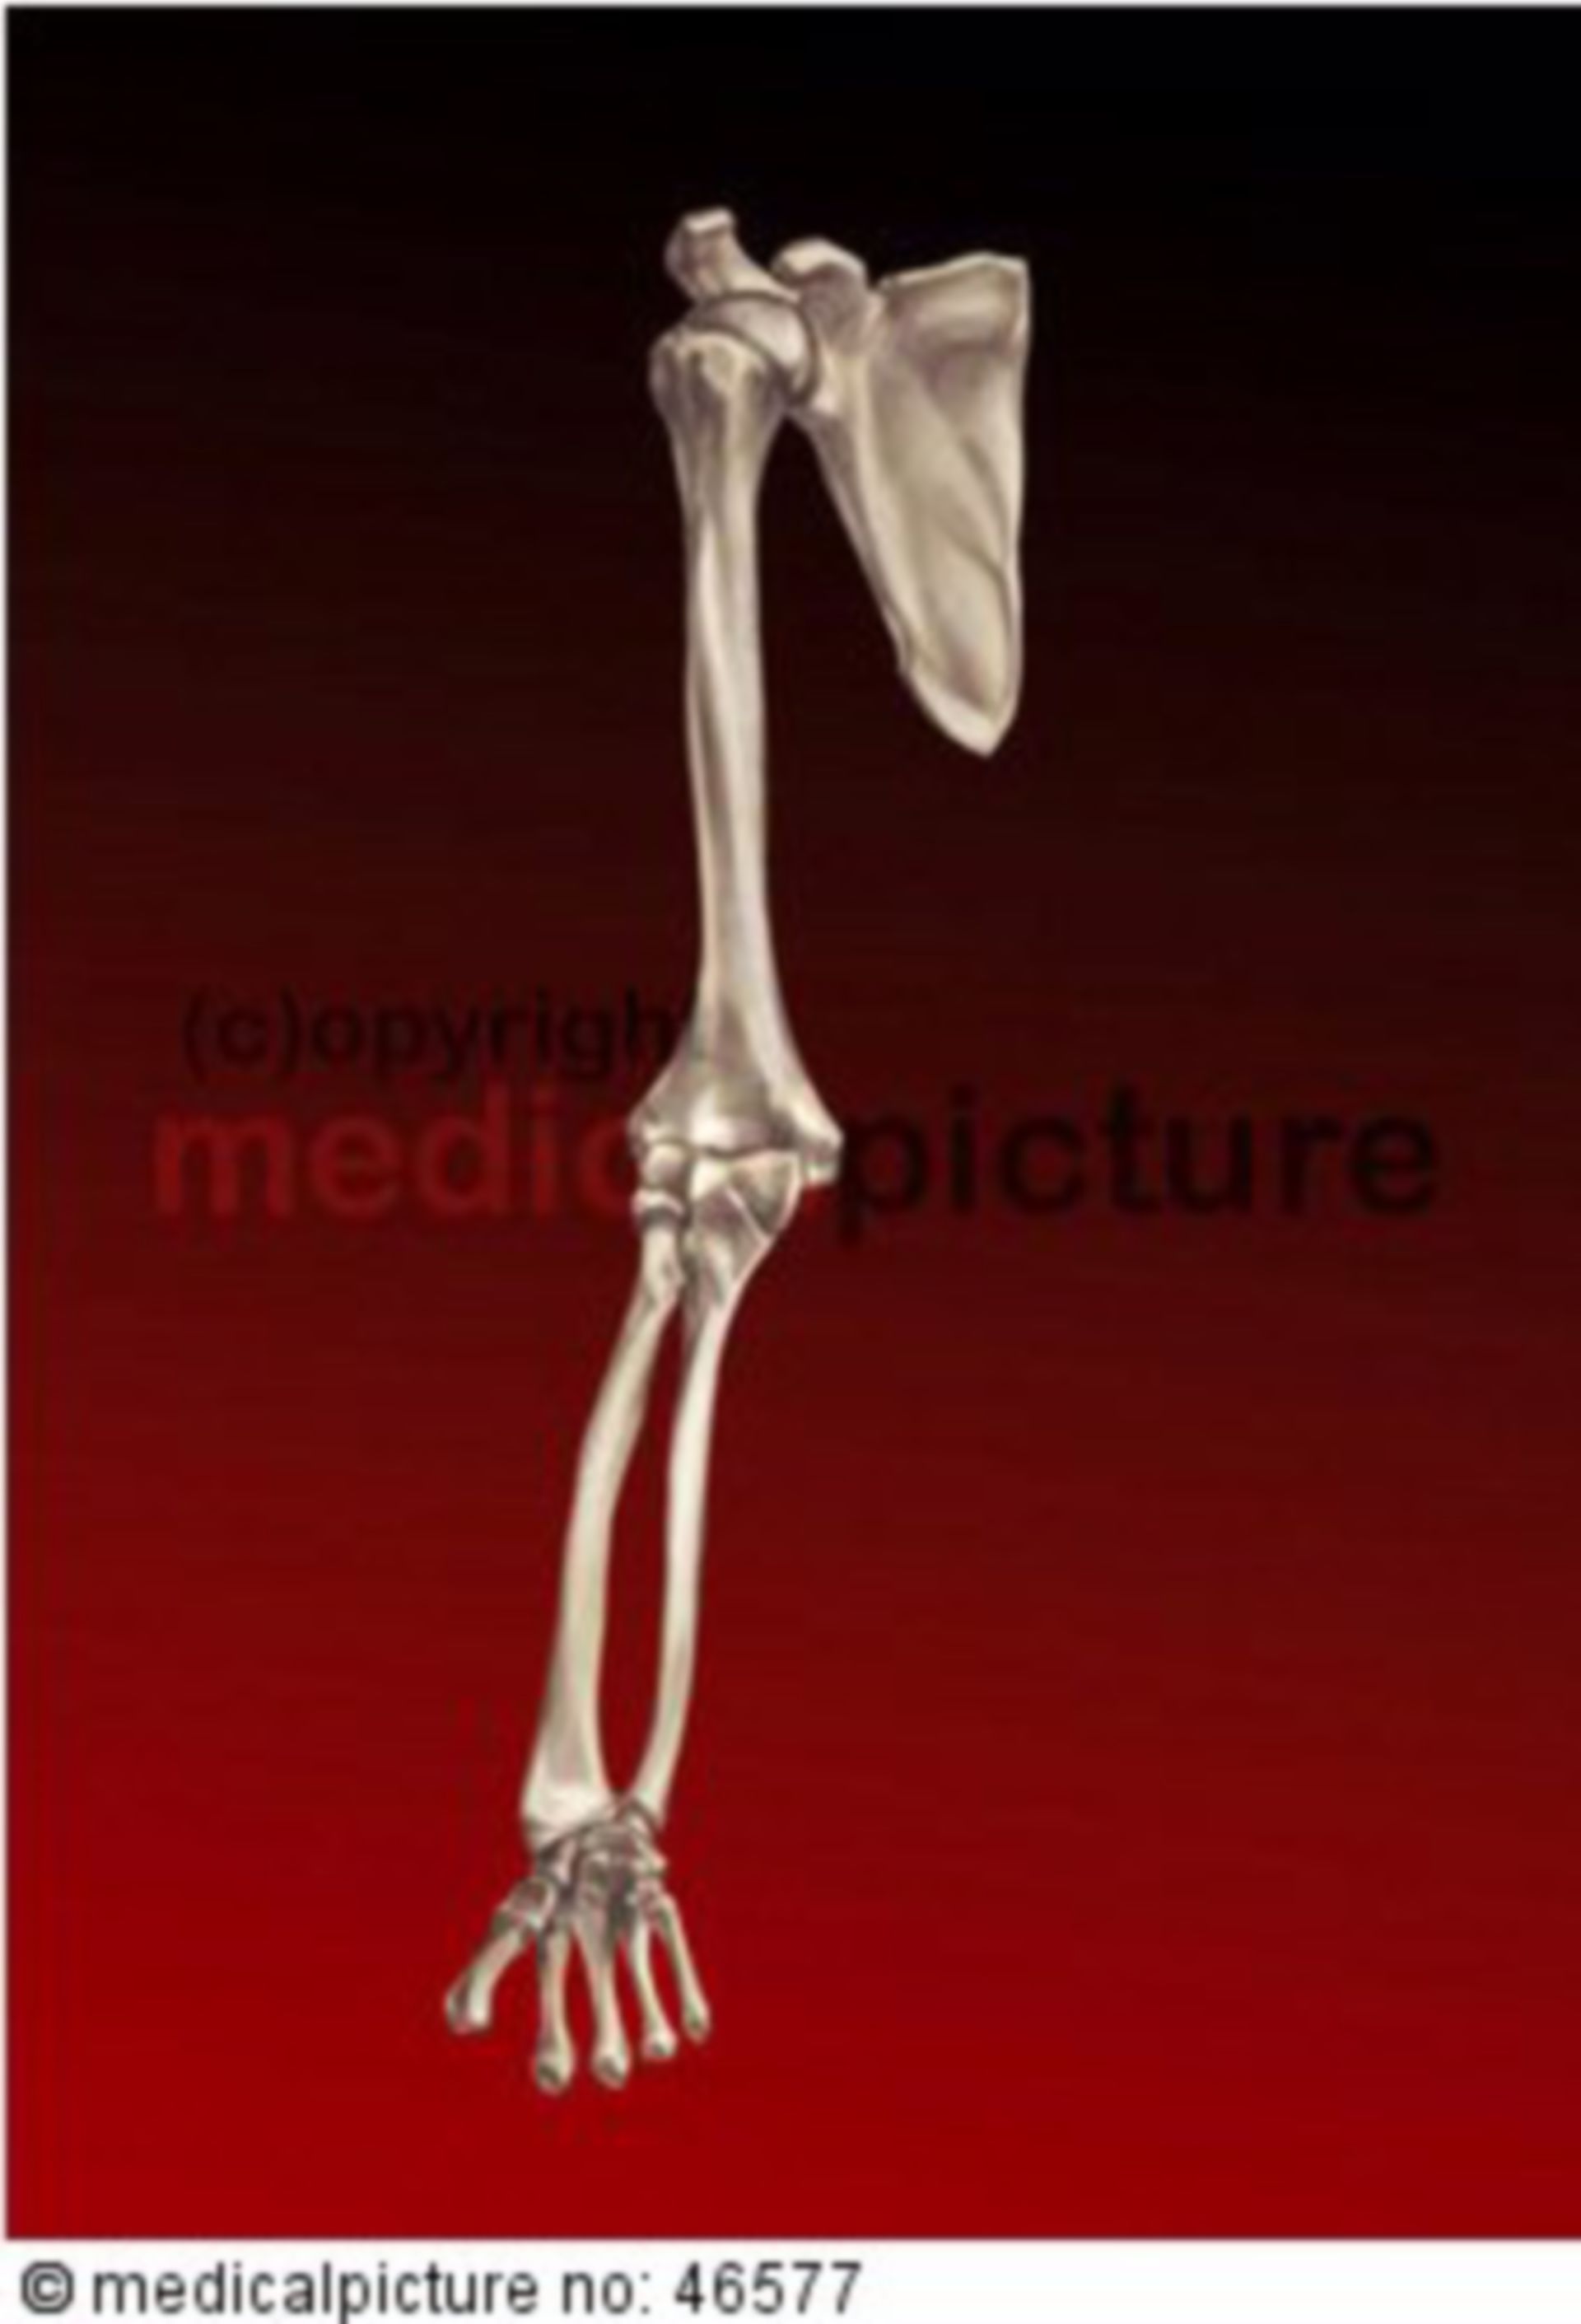 Bones of the upper limb